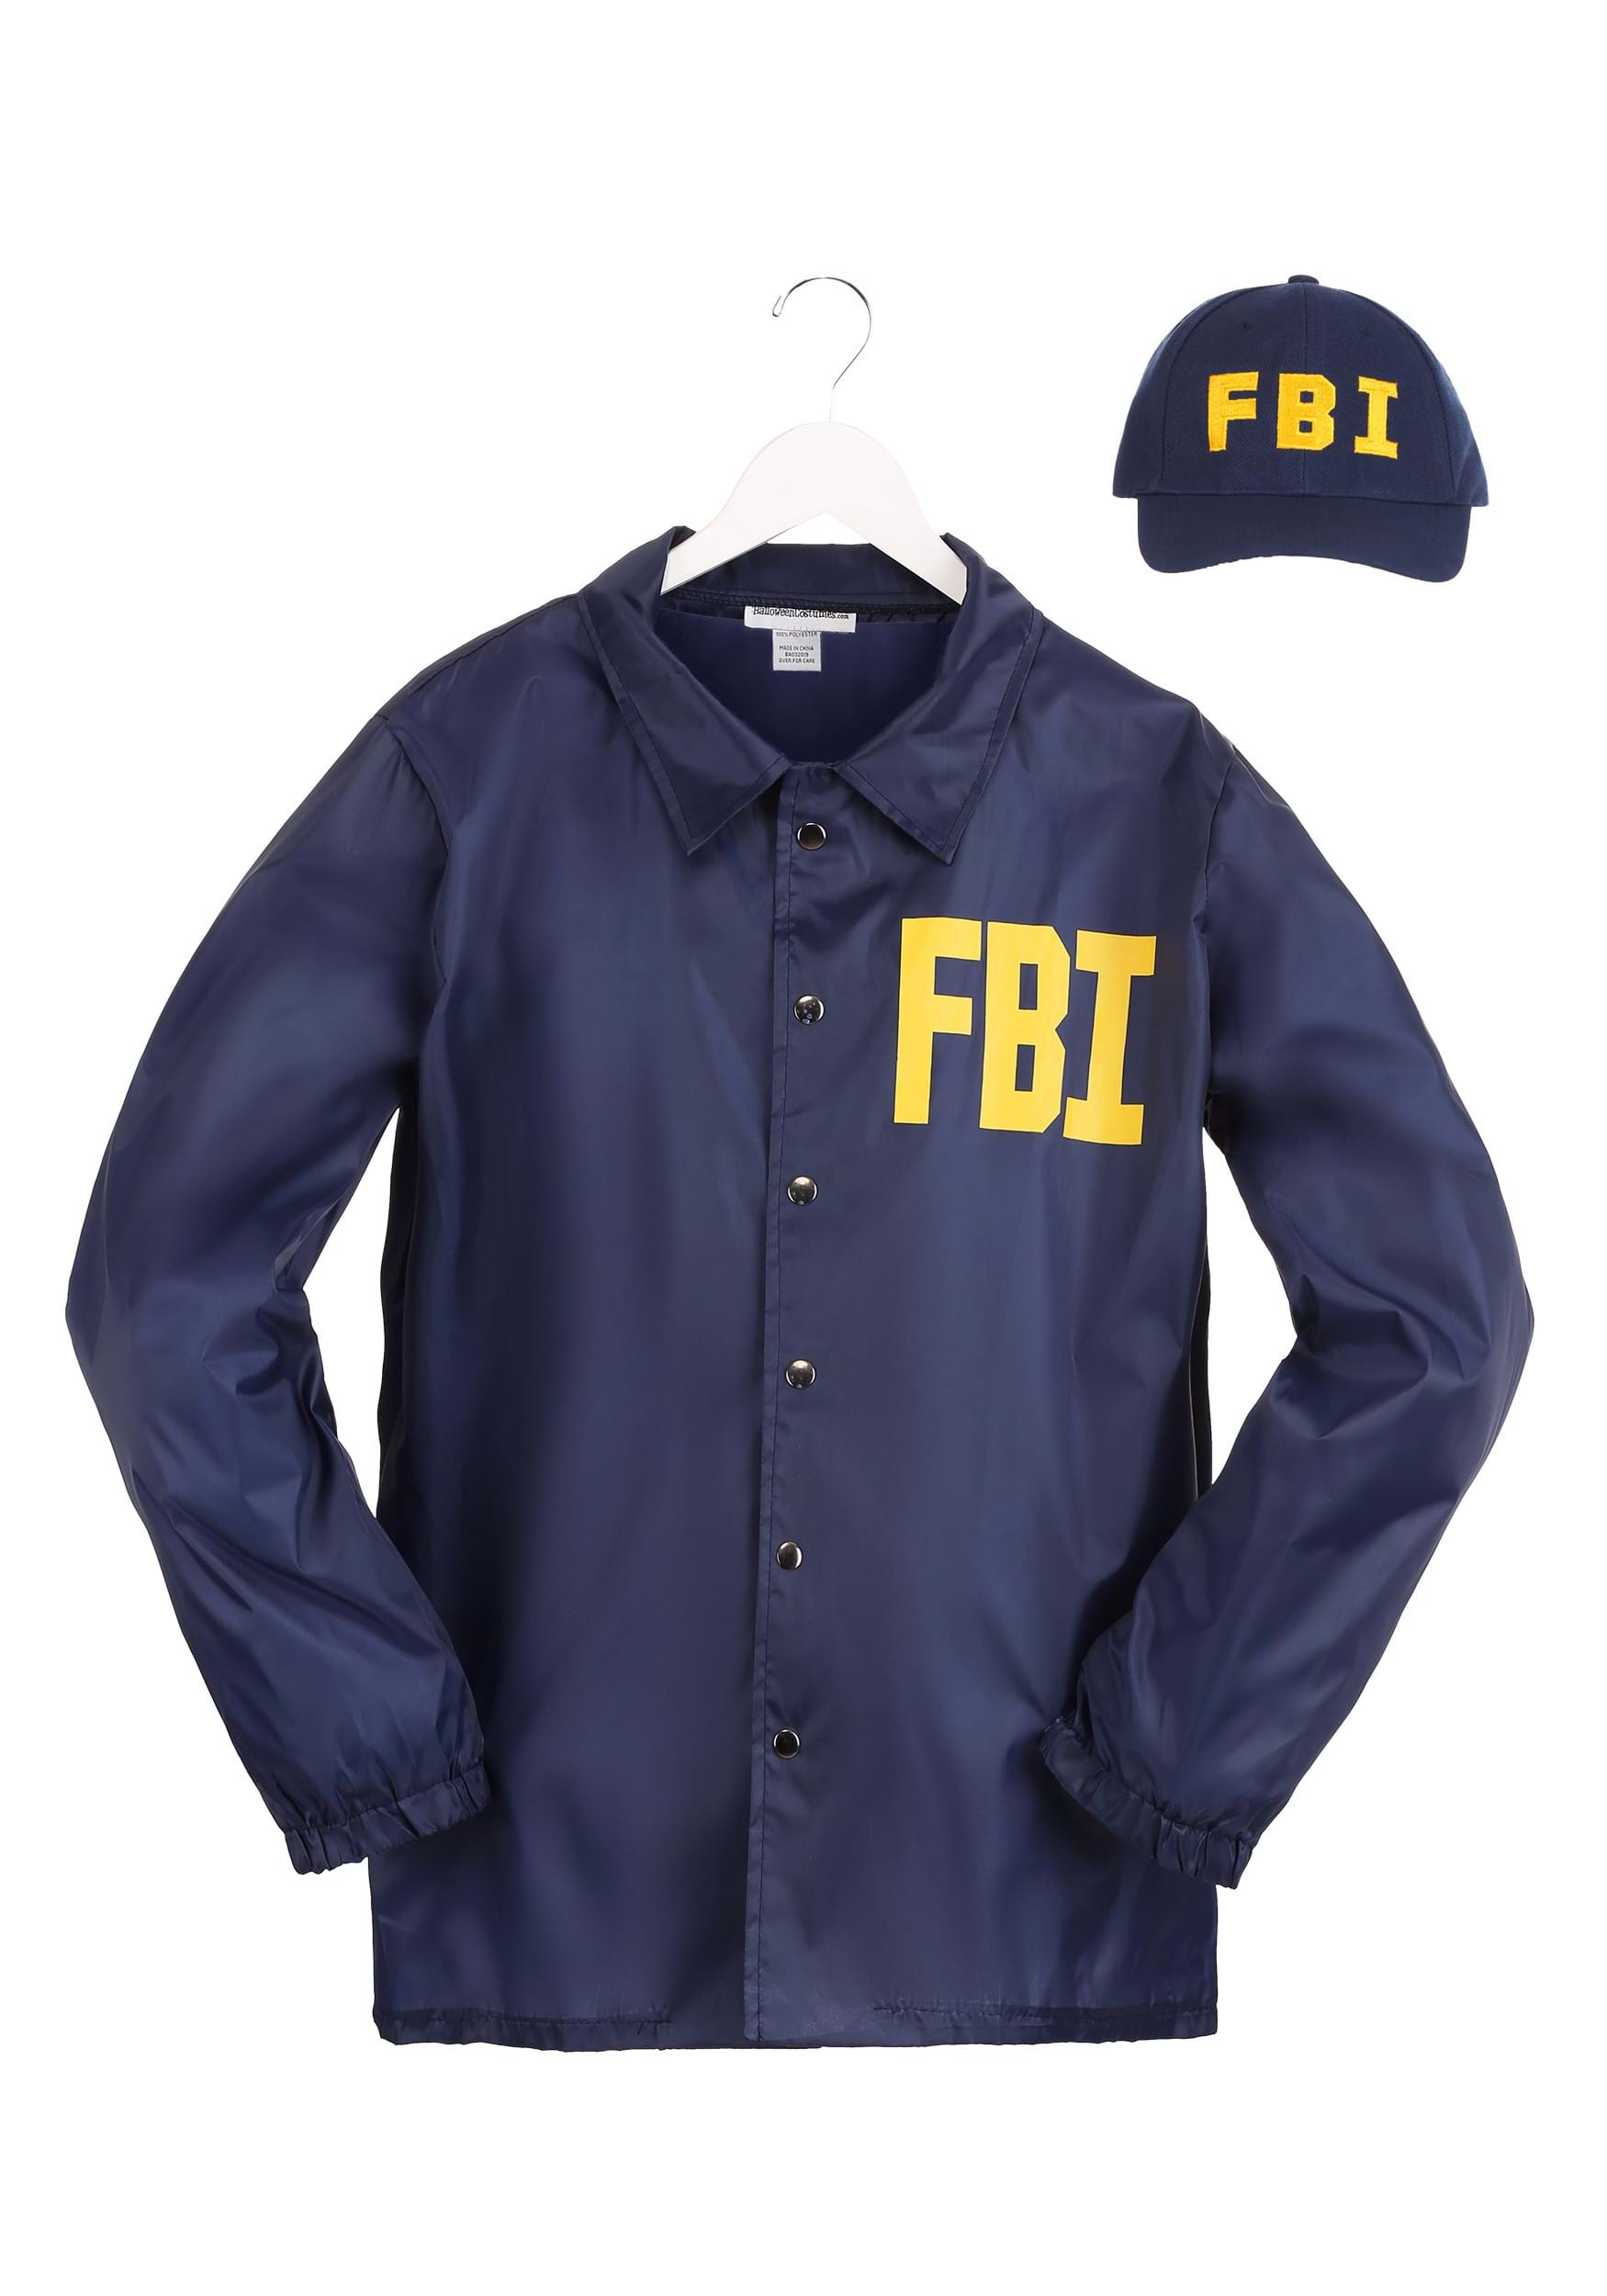 FBI Fancy Dress Costume For Men